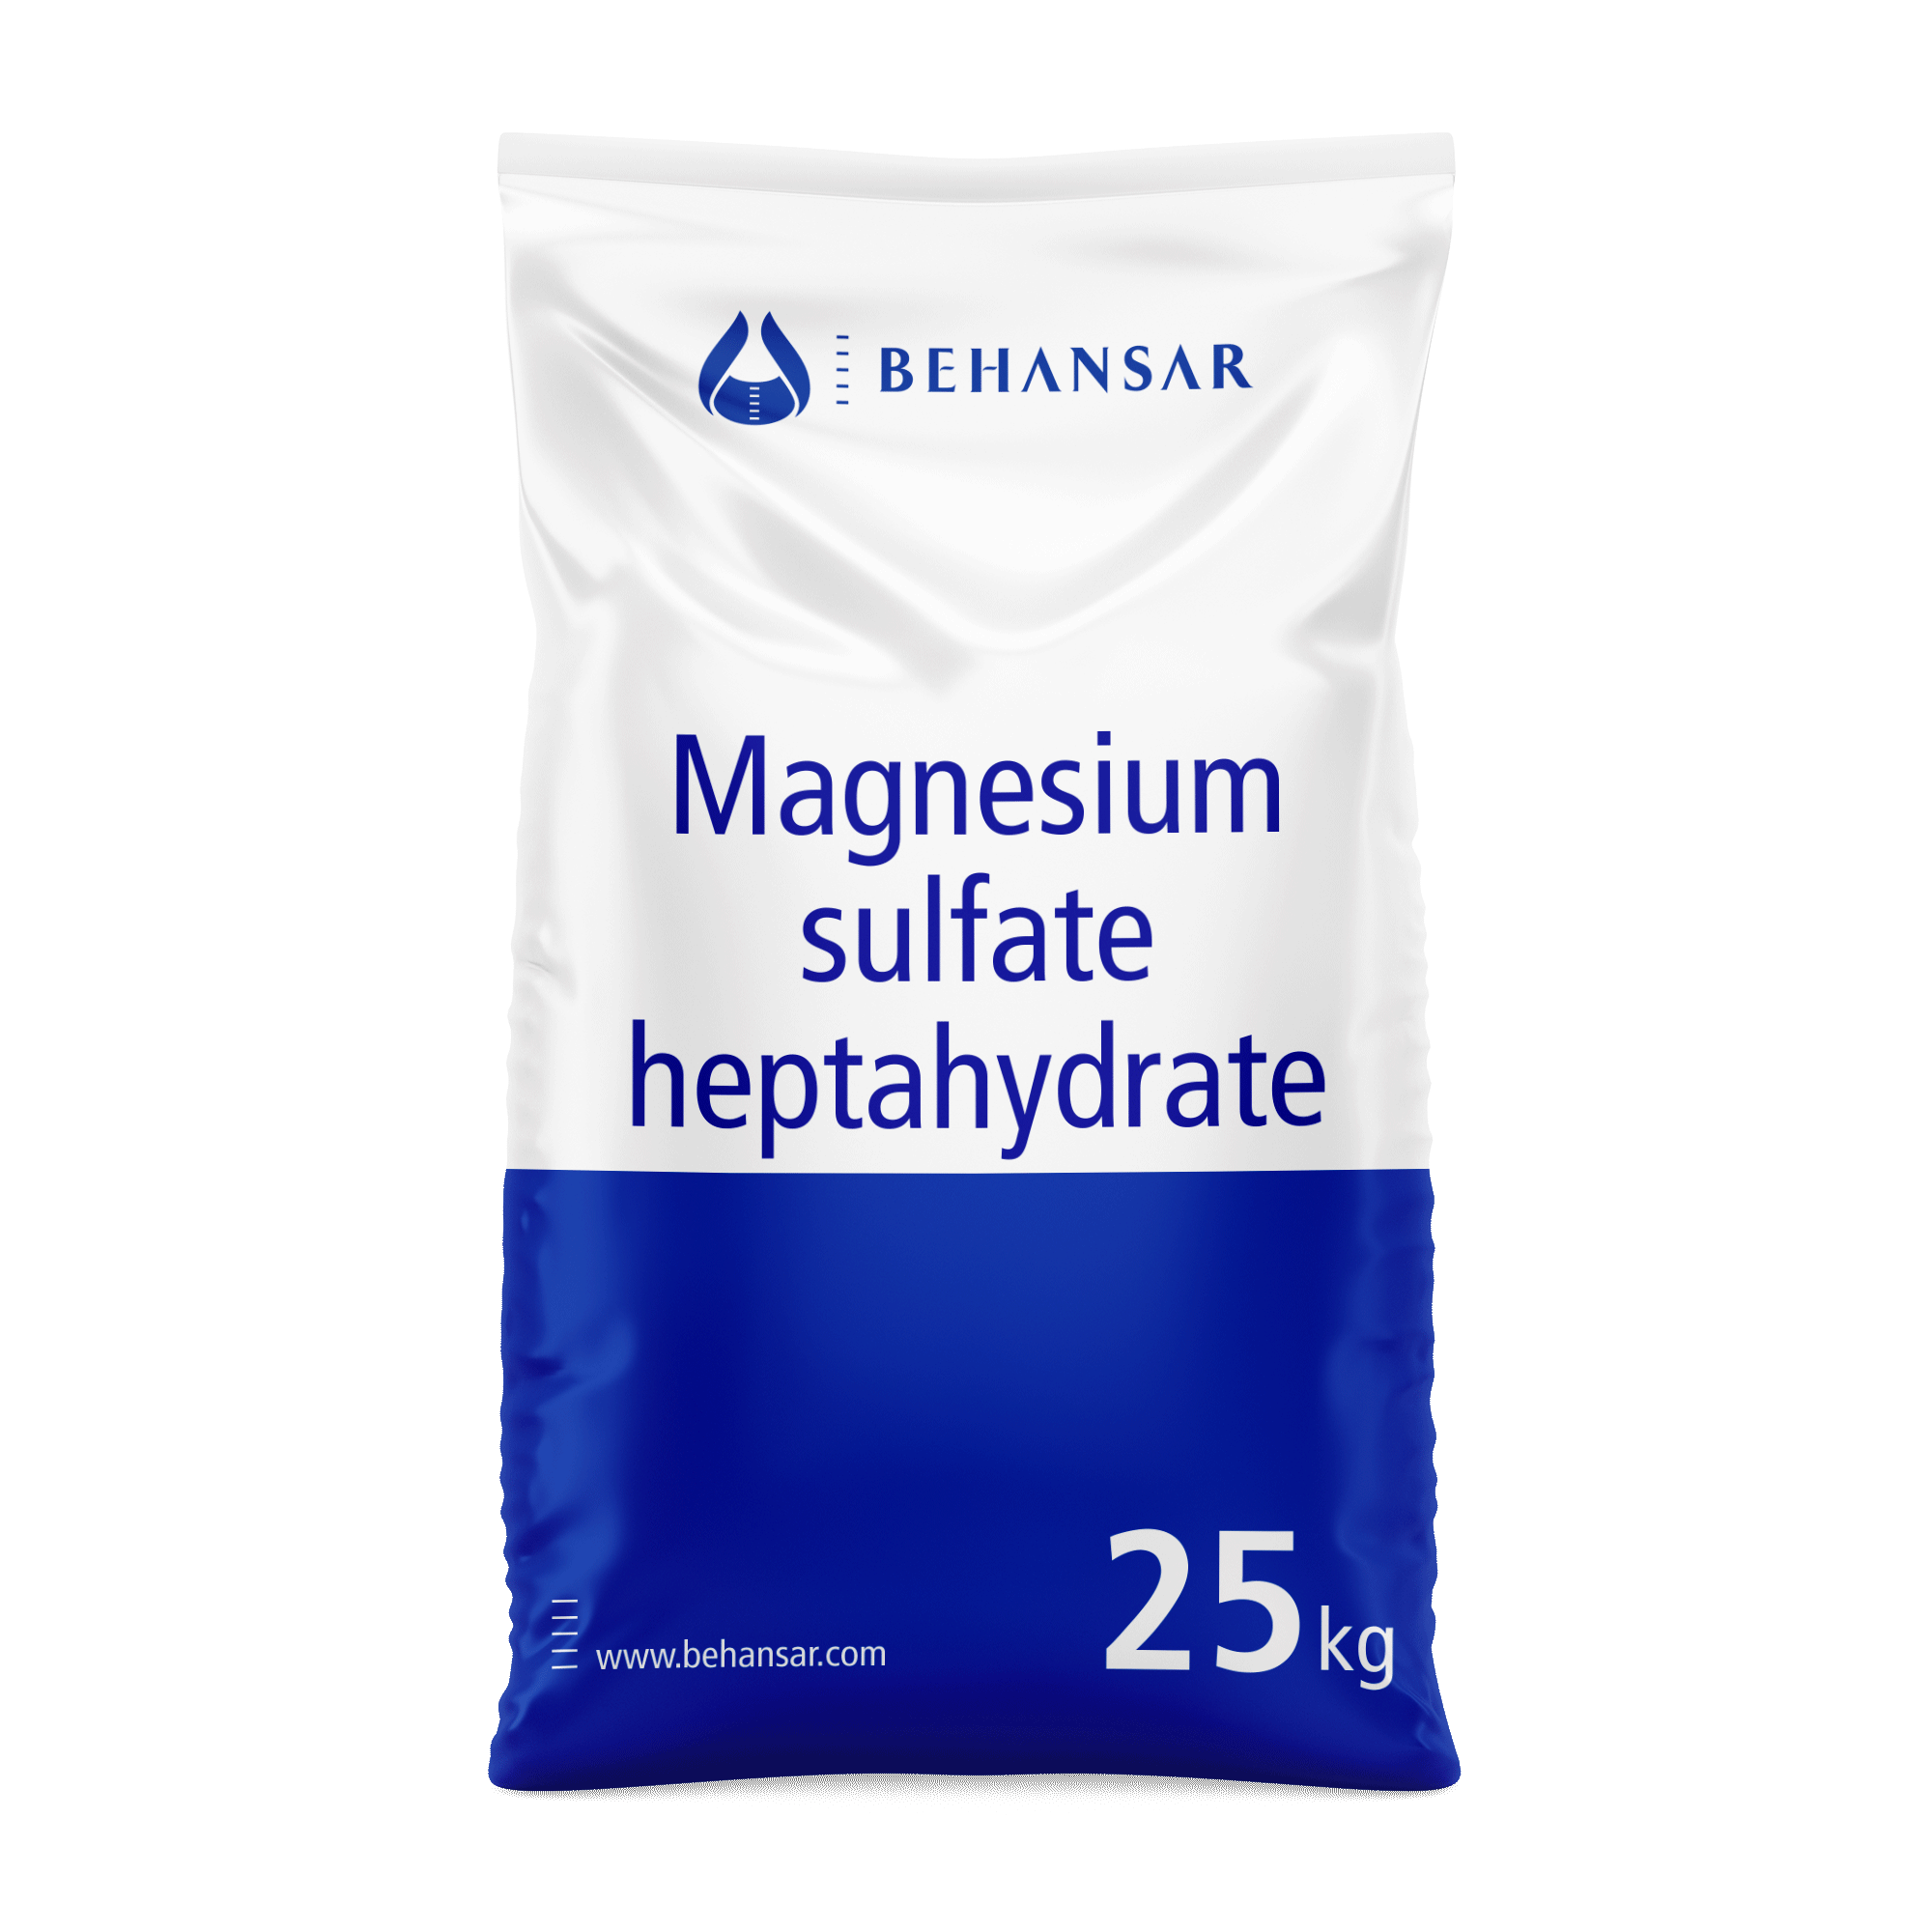 منیزیم سولفات هپتا هیدرات یکی از تولیدات شرکت بهانسار است